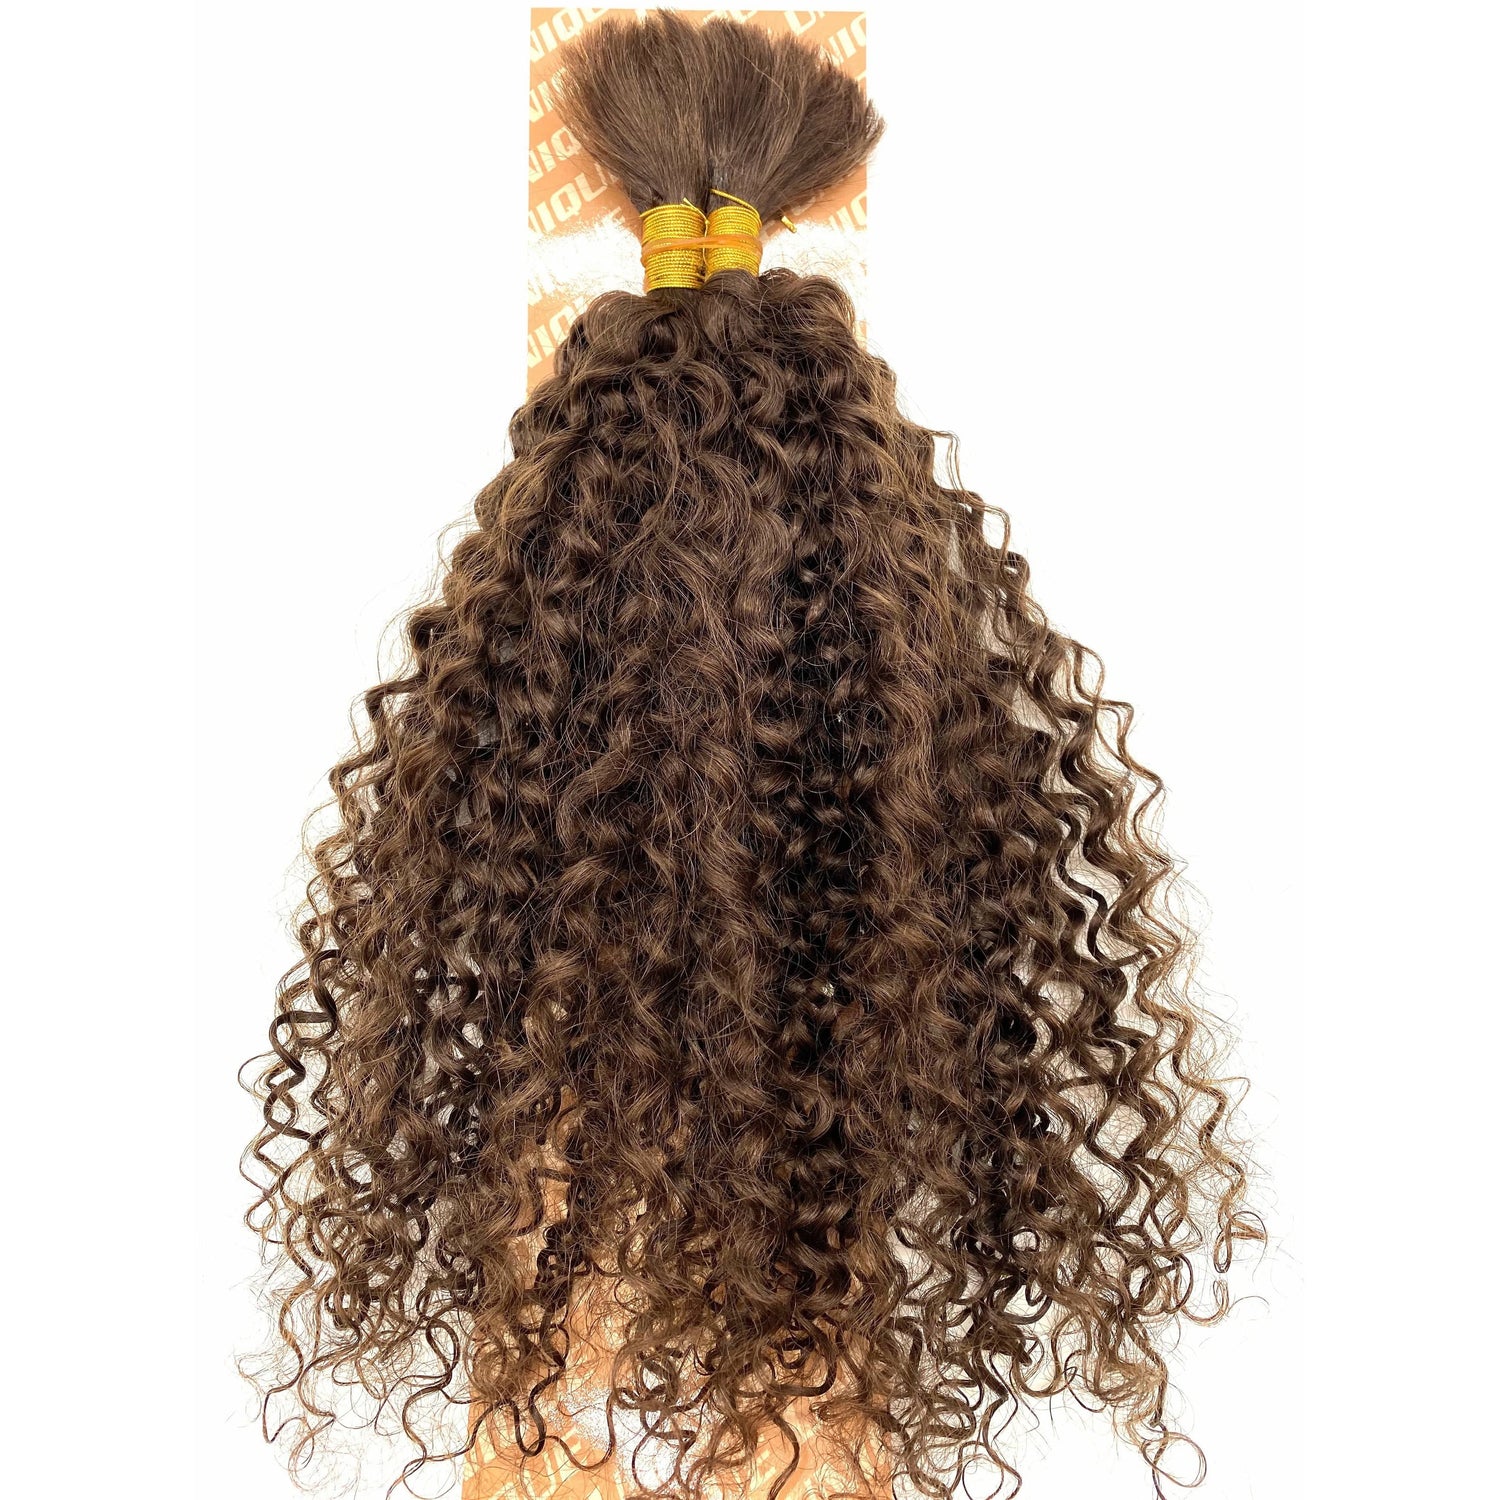 Unique's Human Hair Jerri Curl Bulk 18 Inch - VIP Extensions